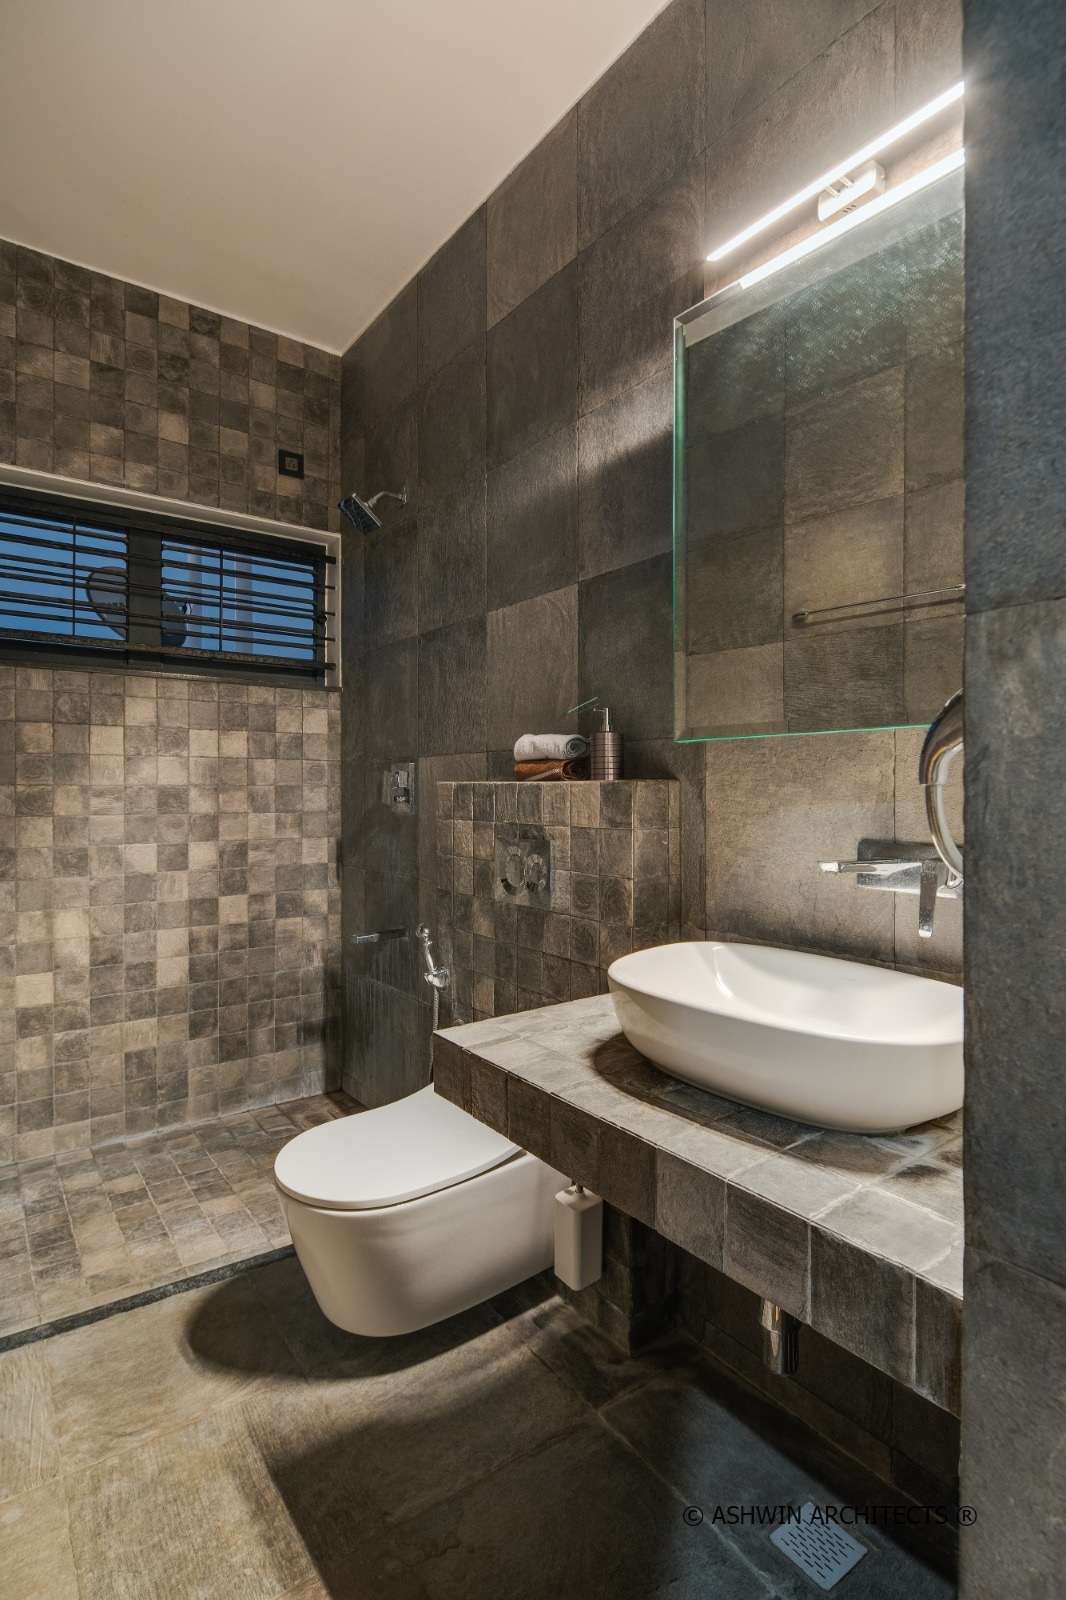 Tridalam-Residential-Architecture-Bathroom-Design-3